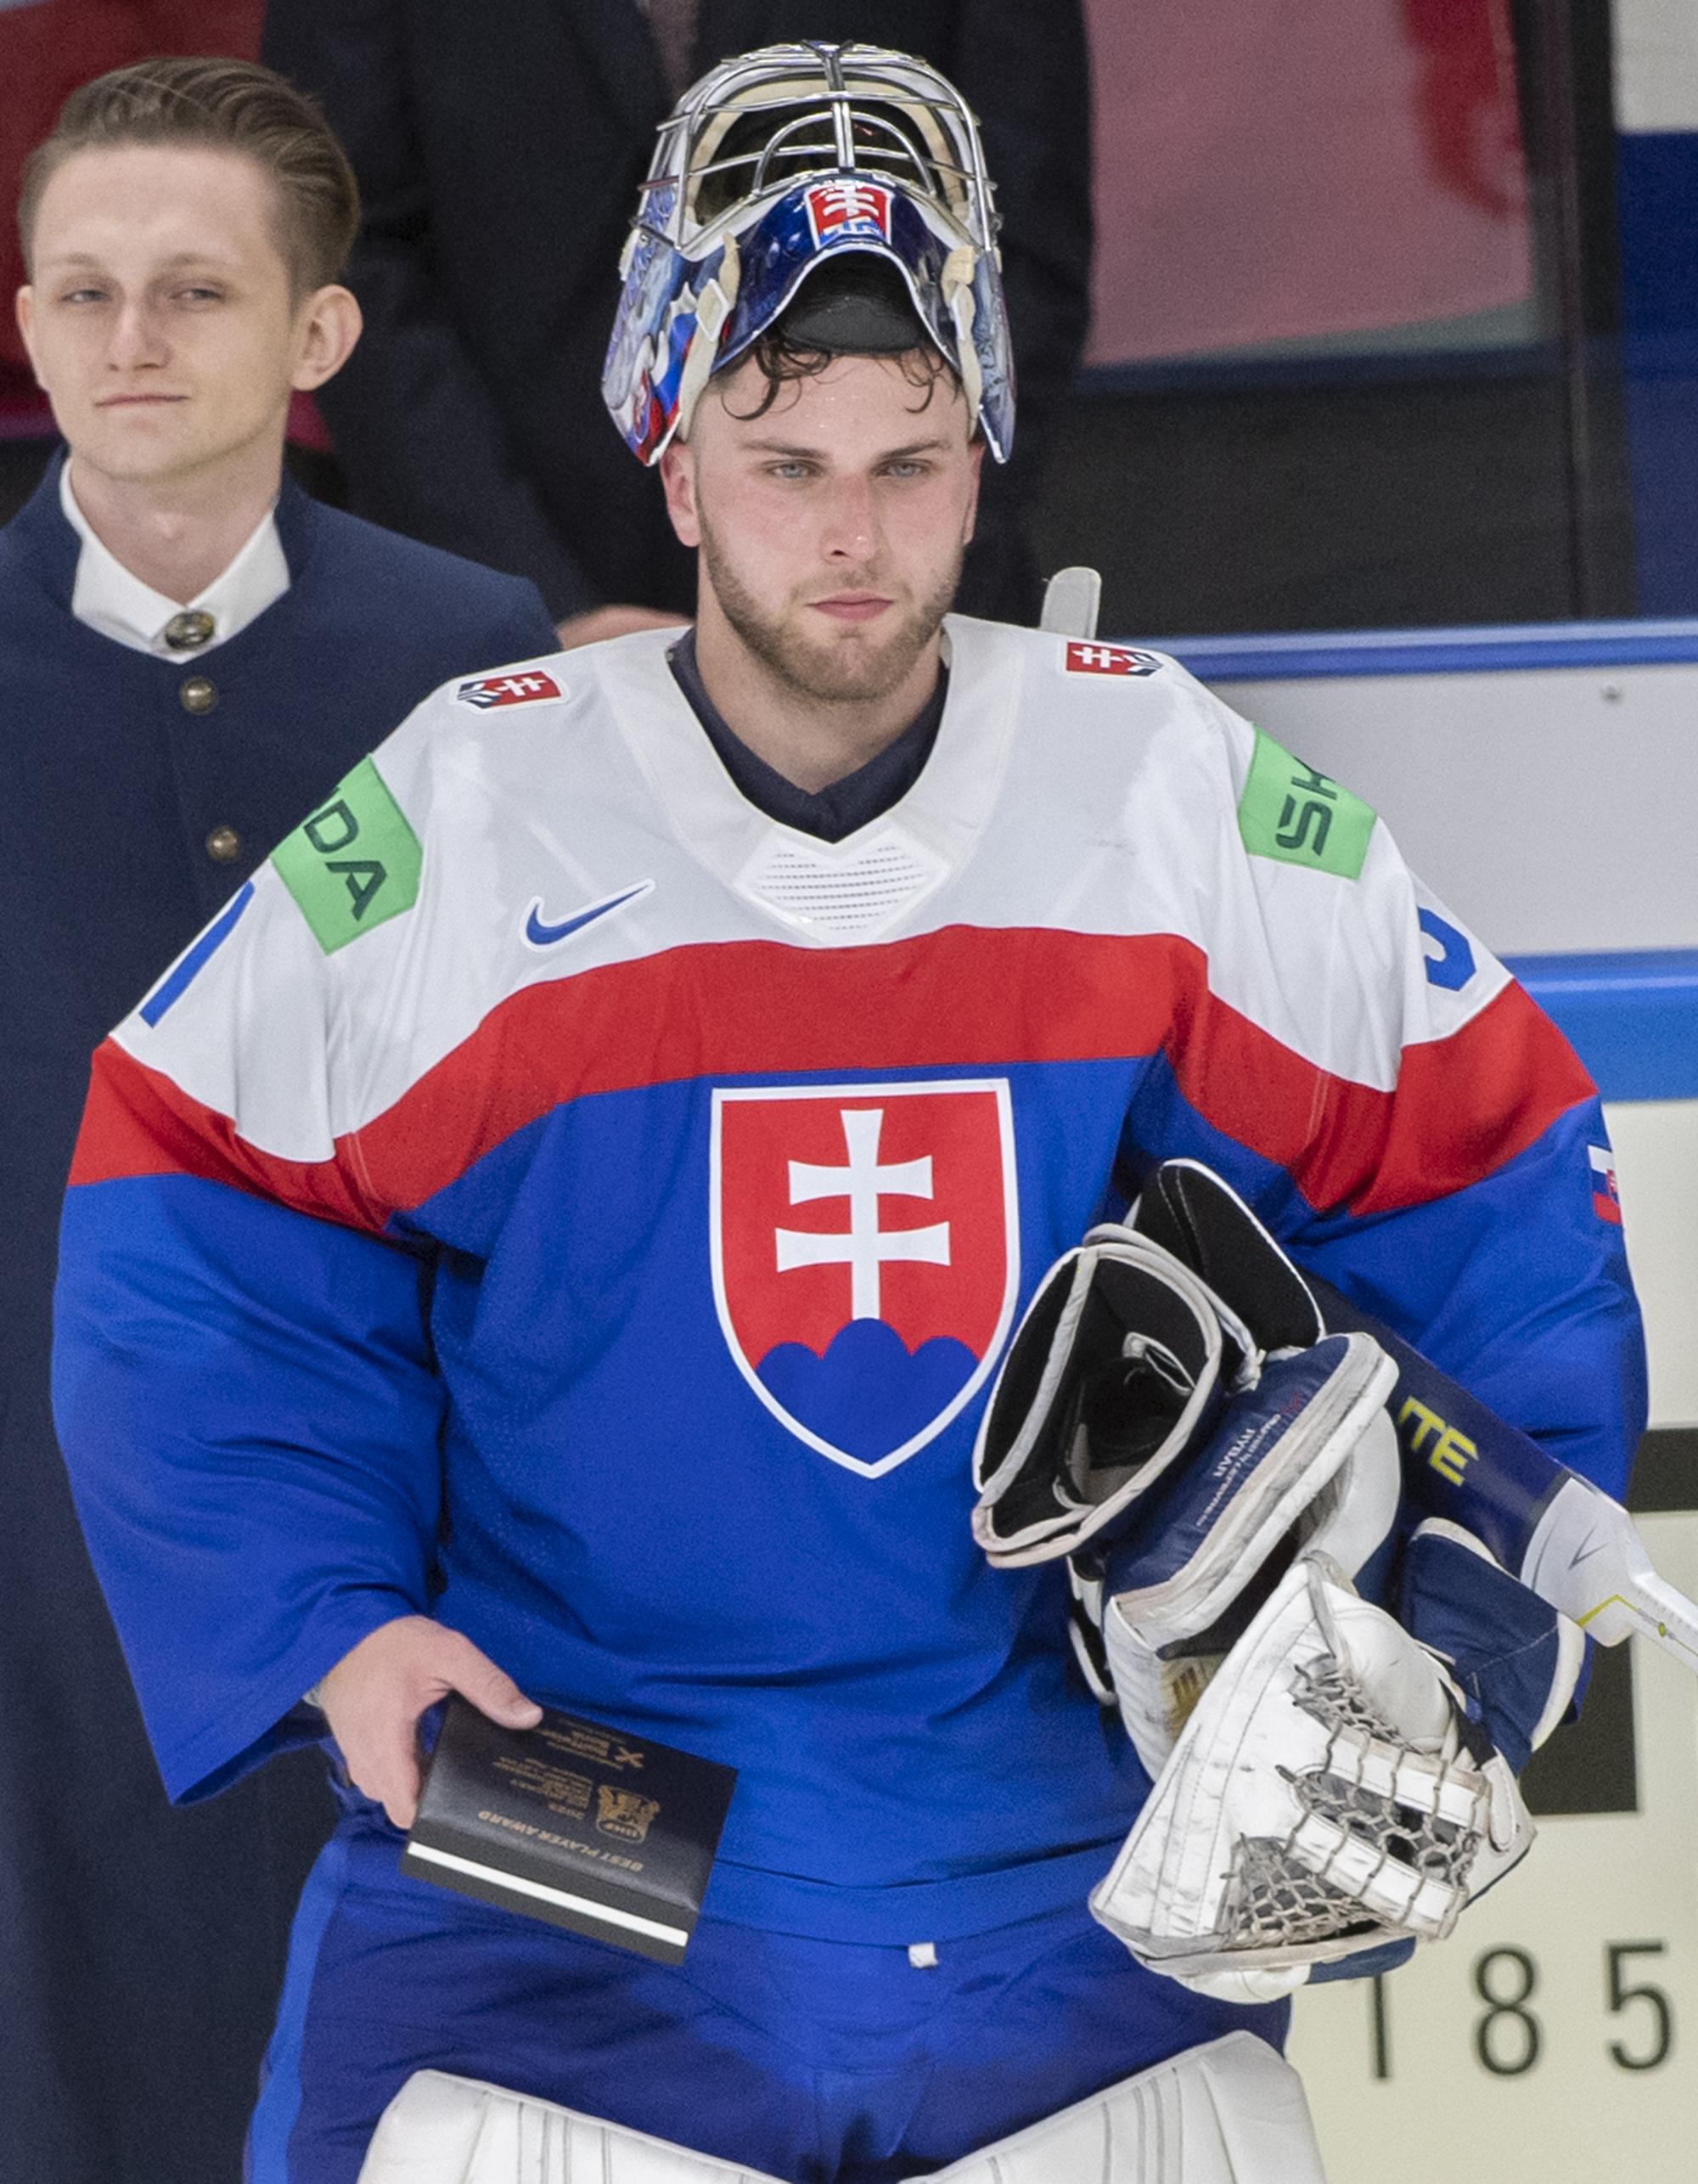 Slovenský hokejový brankár Samuel Hlavaj vyhlásený ako najlepší hráč Slovenska po zápase Slovensko - Kanada.